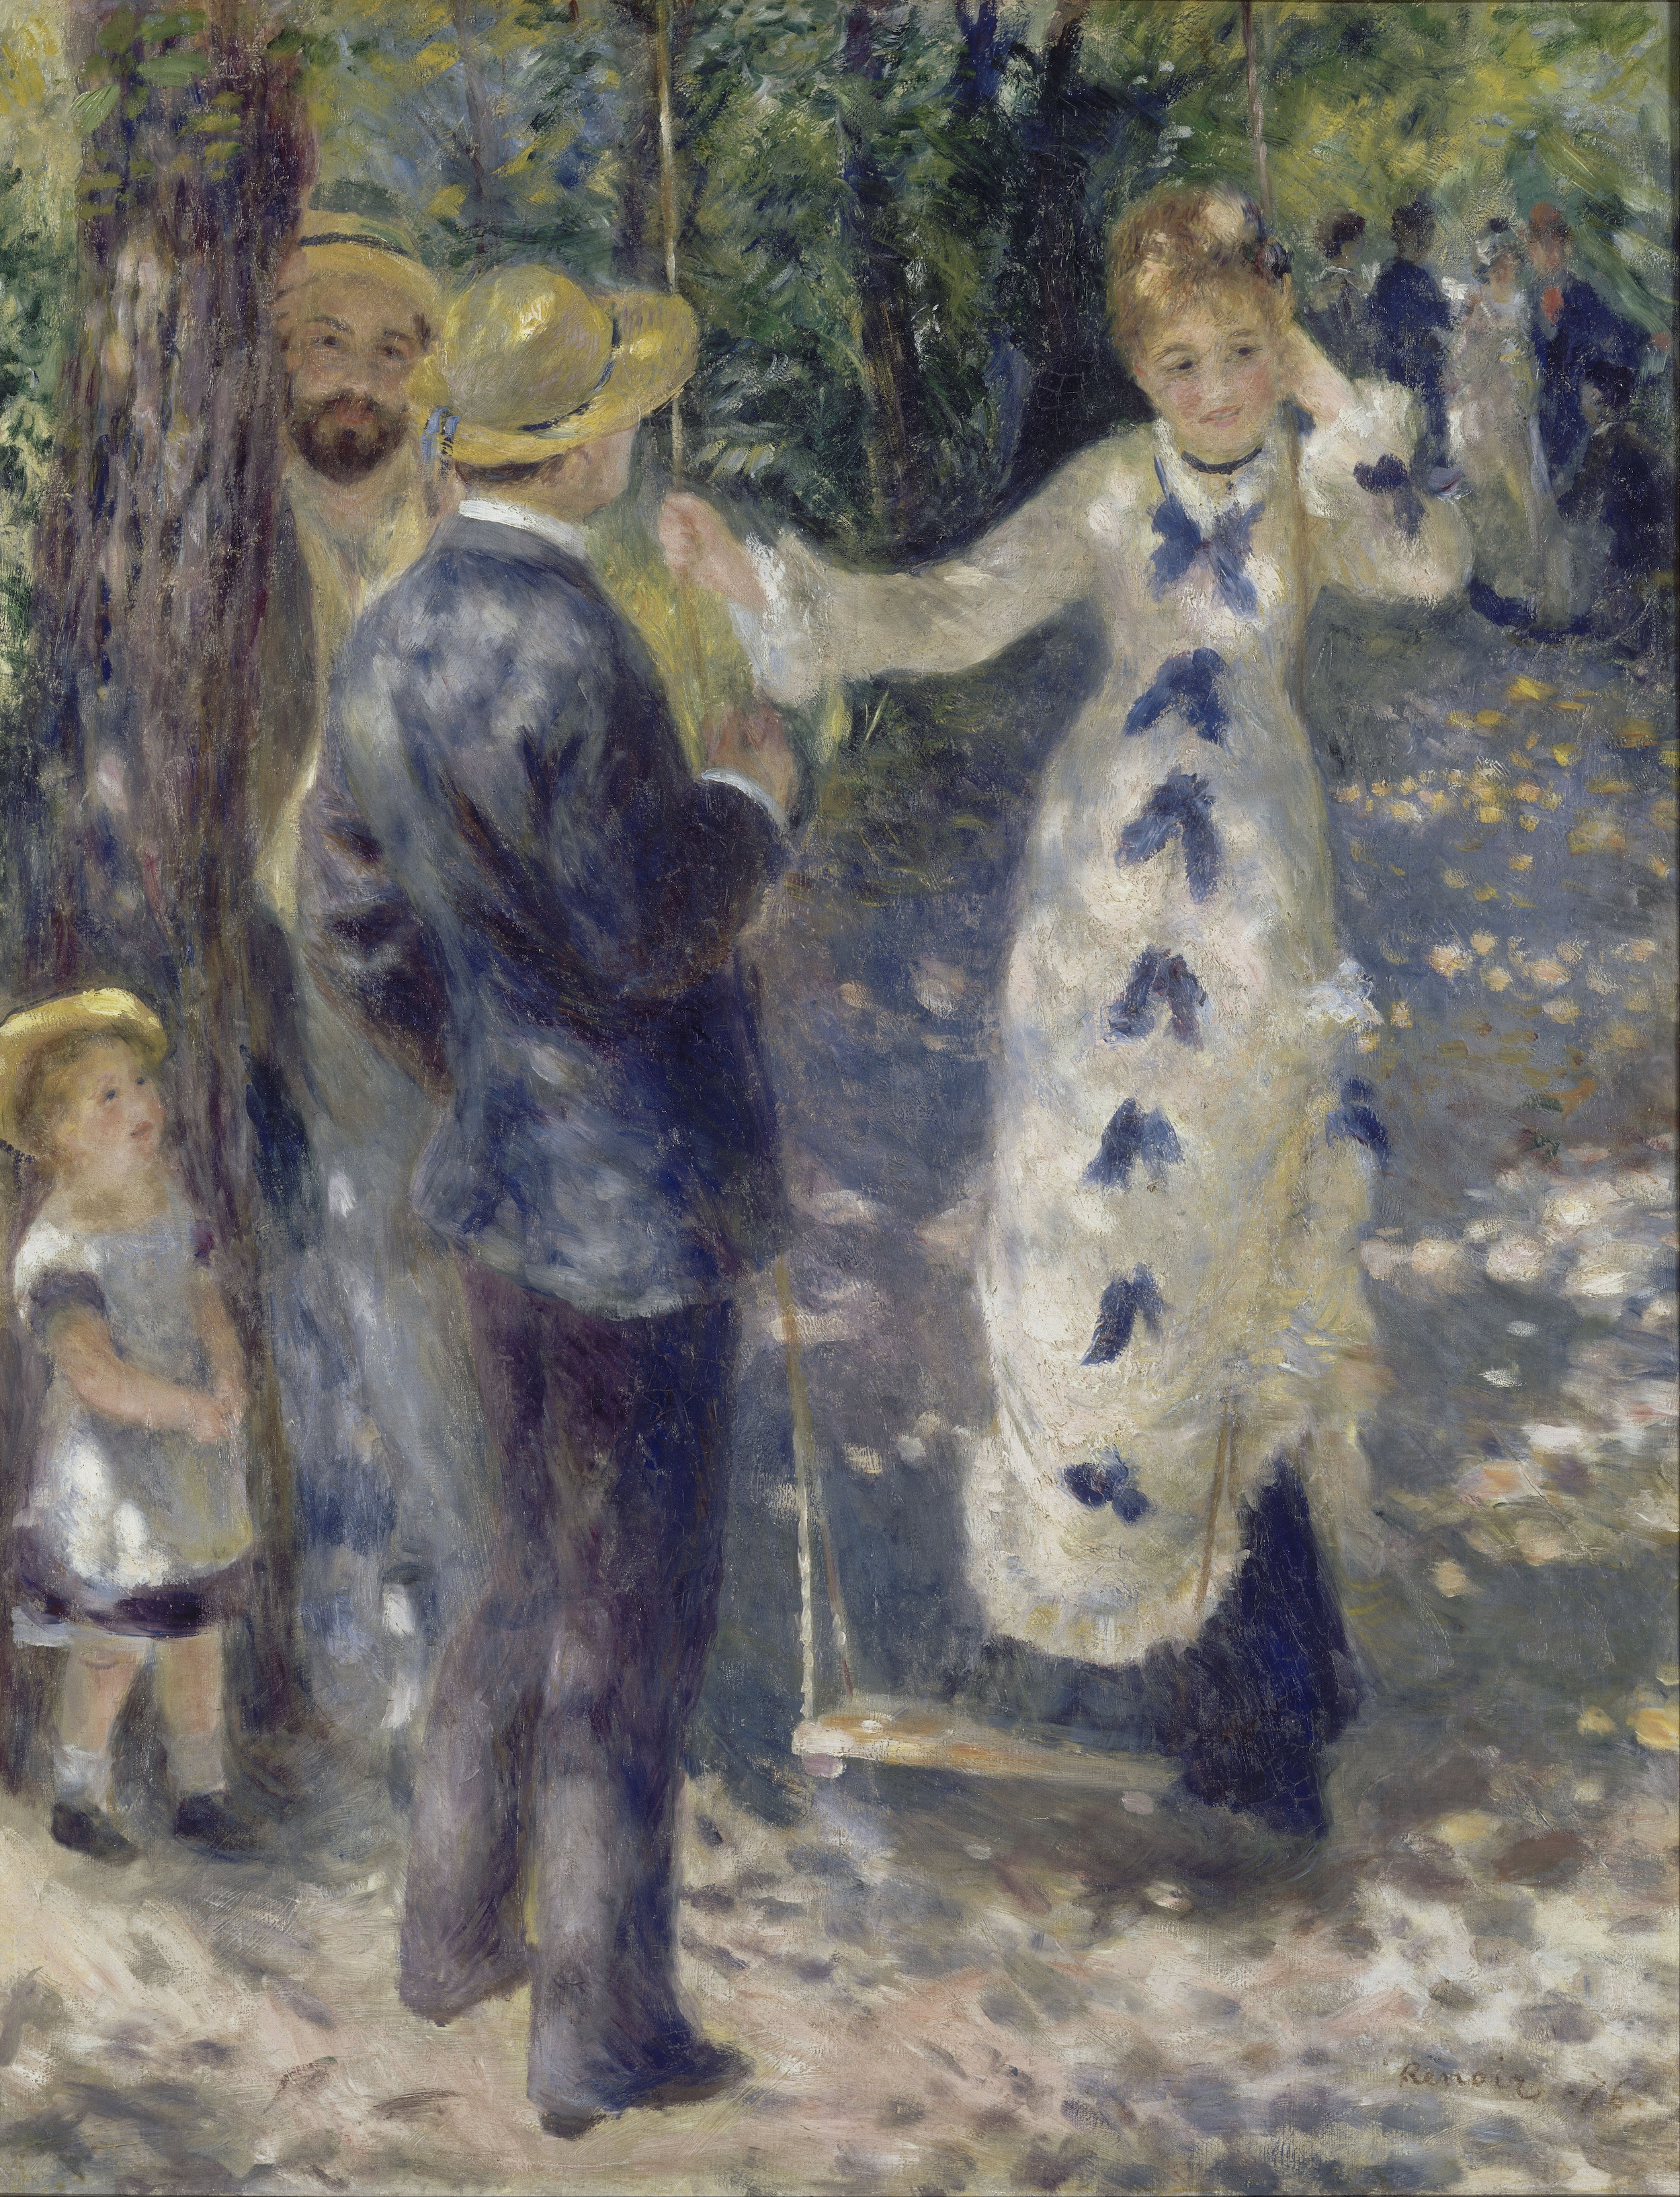 La Balançoire by Pierre-Auguste Renoir - 1876 - 92 x 73 cm Musée d'Orsay